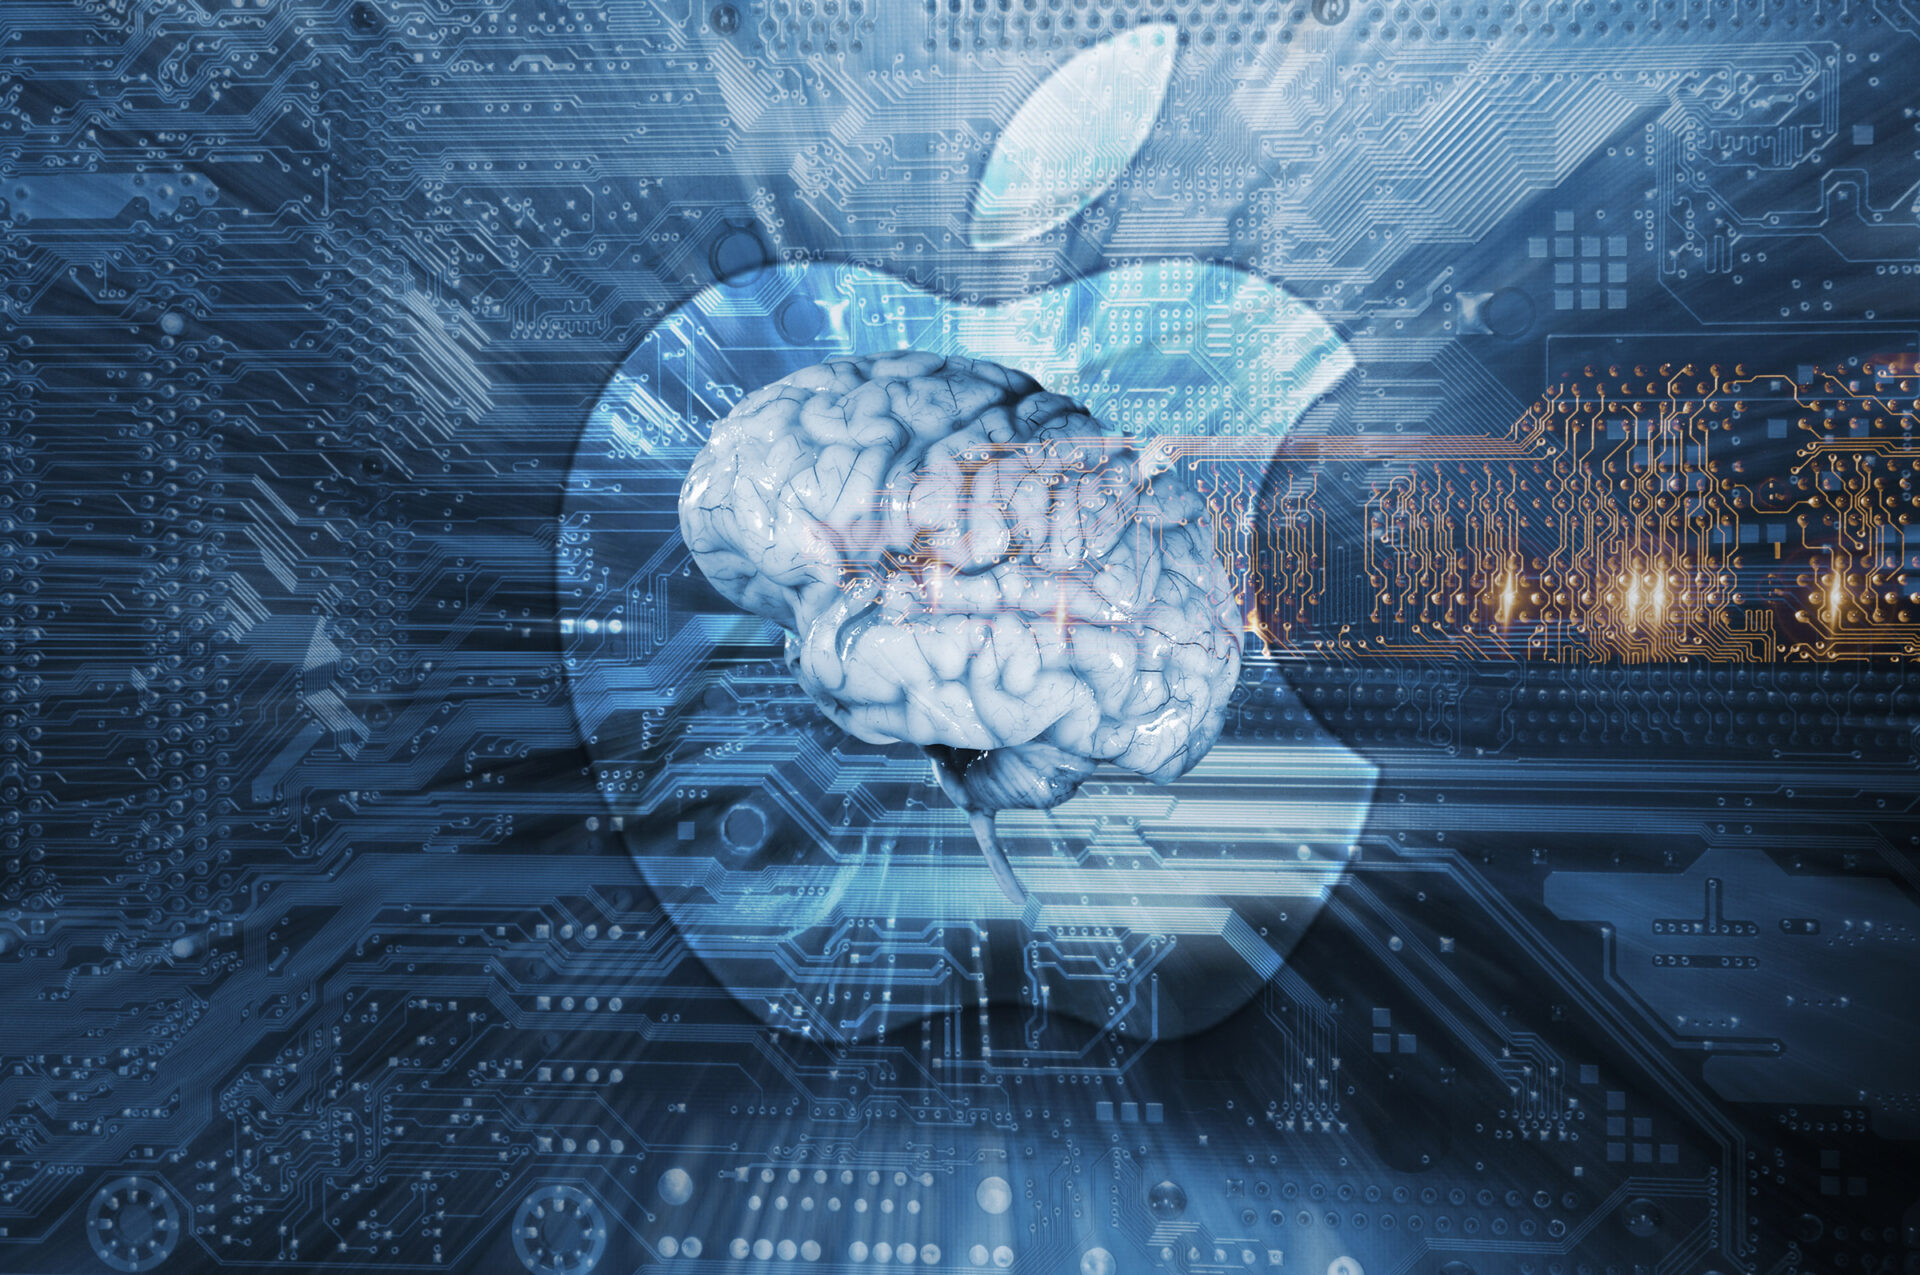 Apple lần đầu công bố các nghiên cứu về trí tuệ nhân tạo